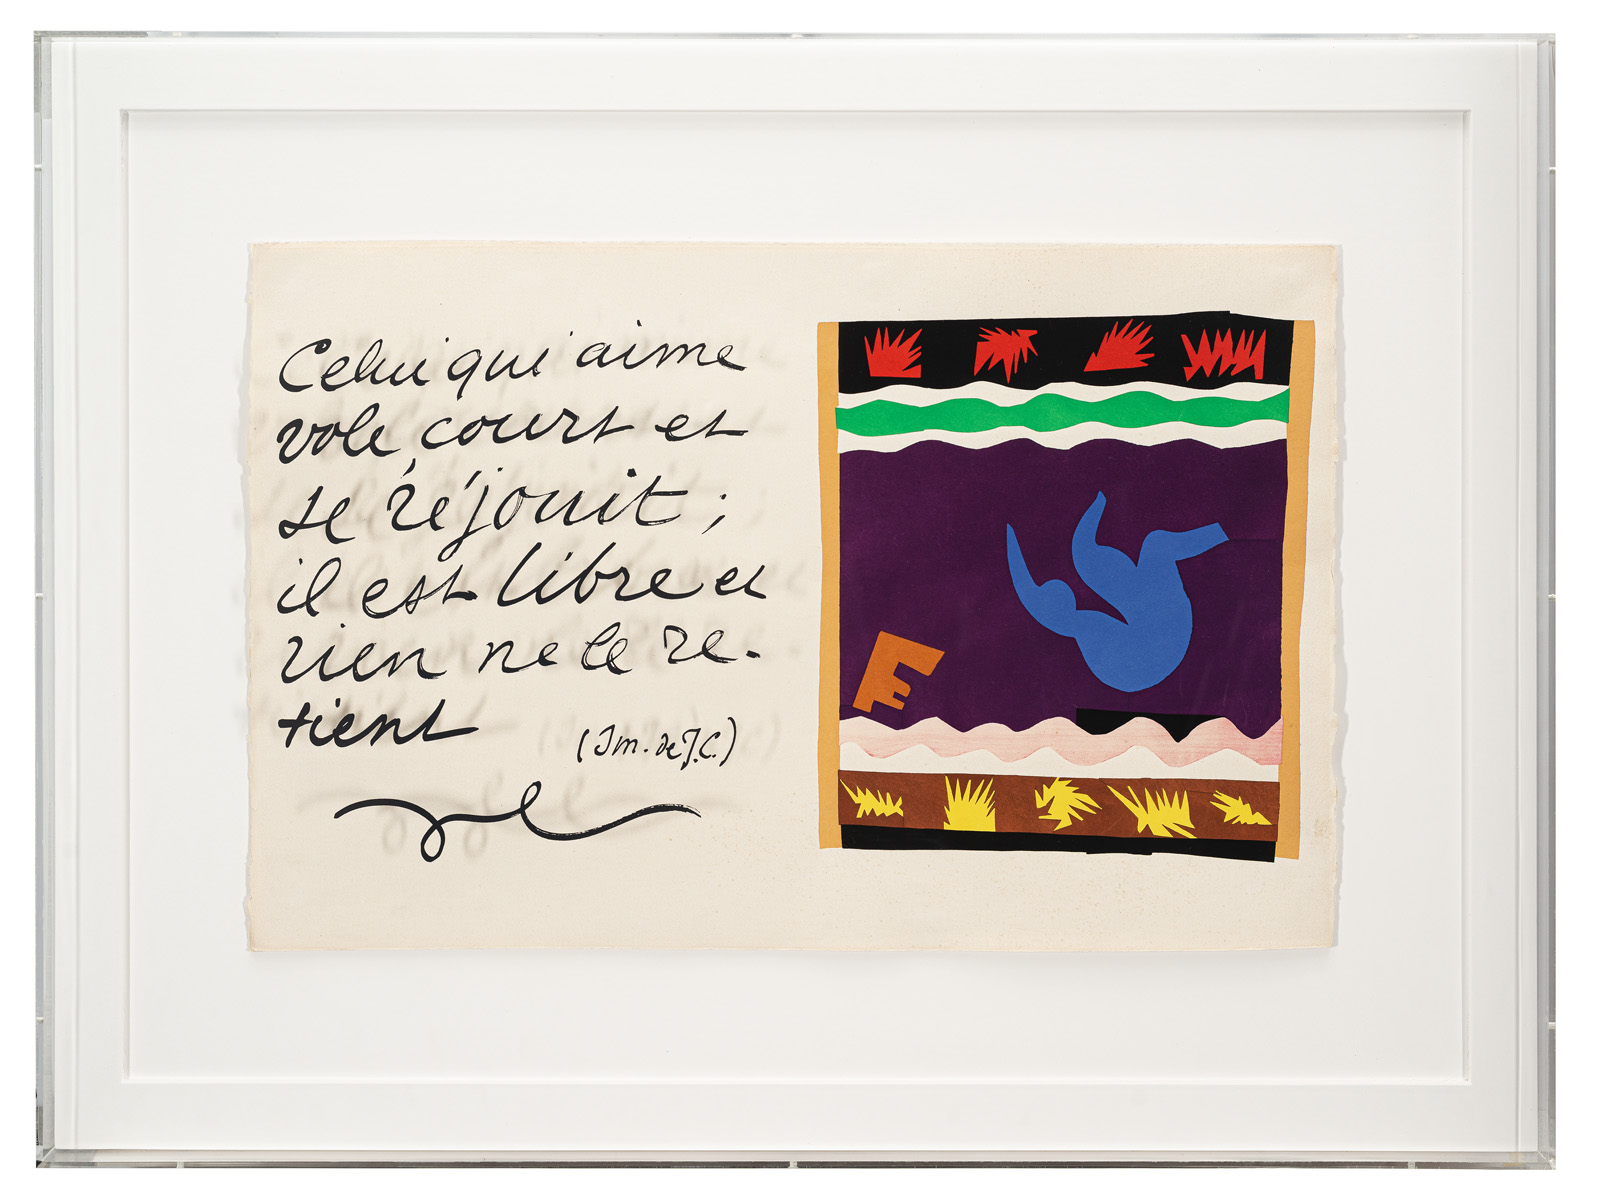 Matisse, Henri (nach) - Image 2 of 3